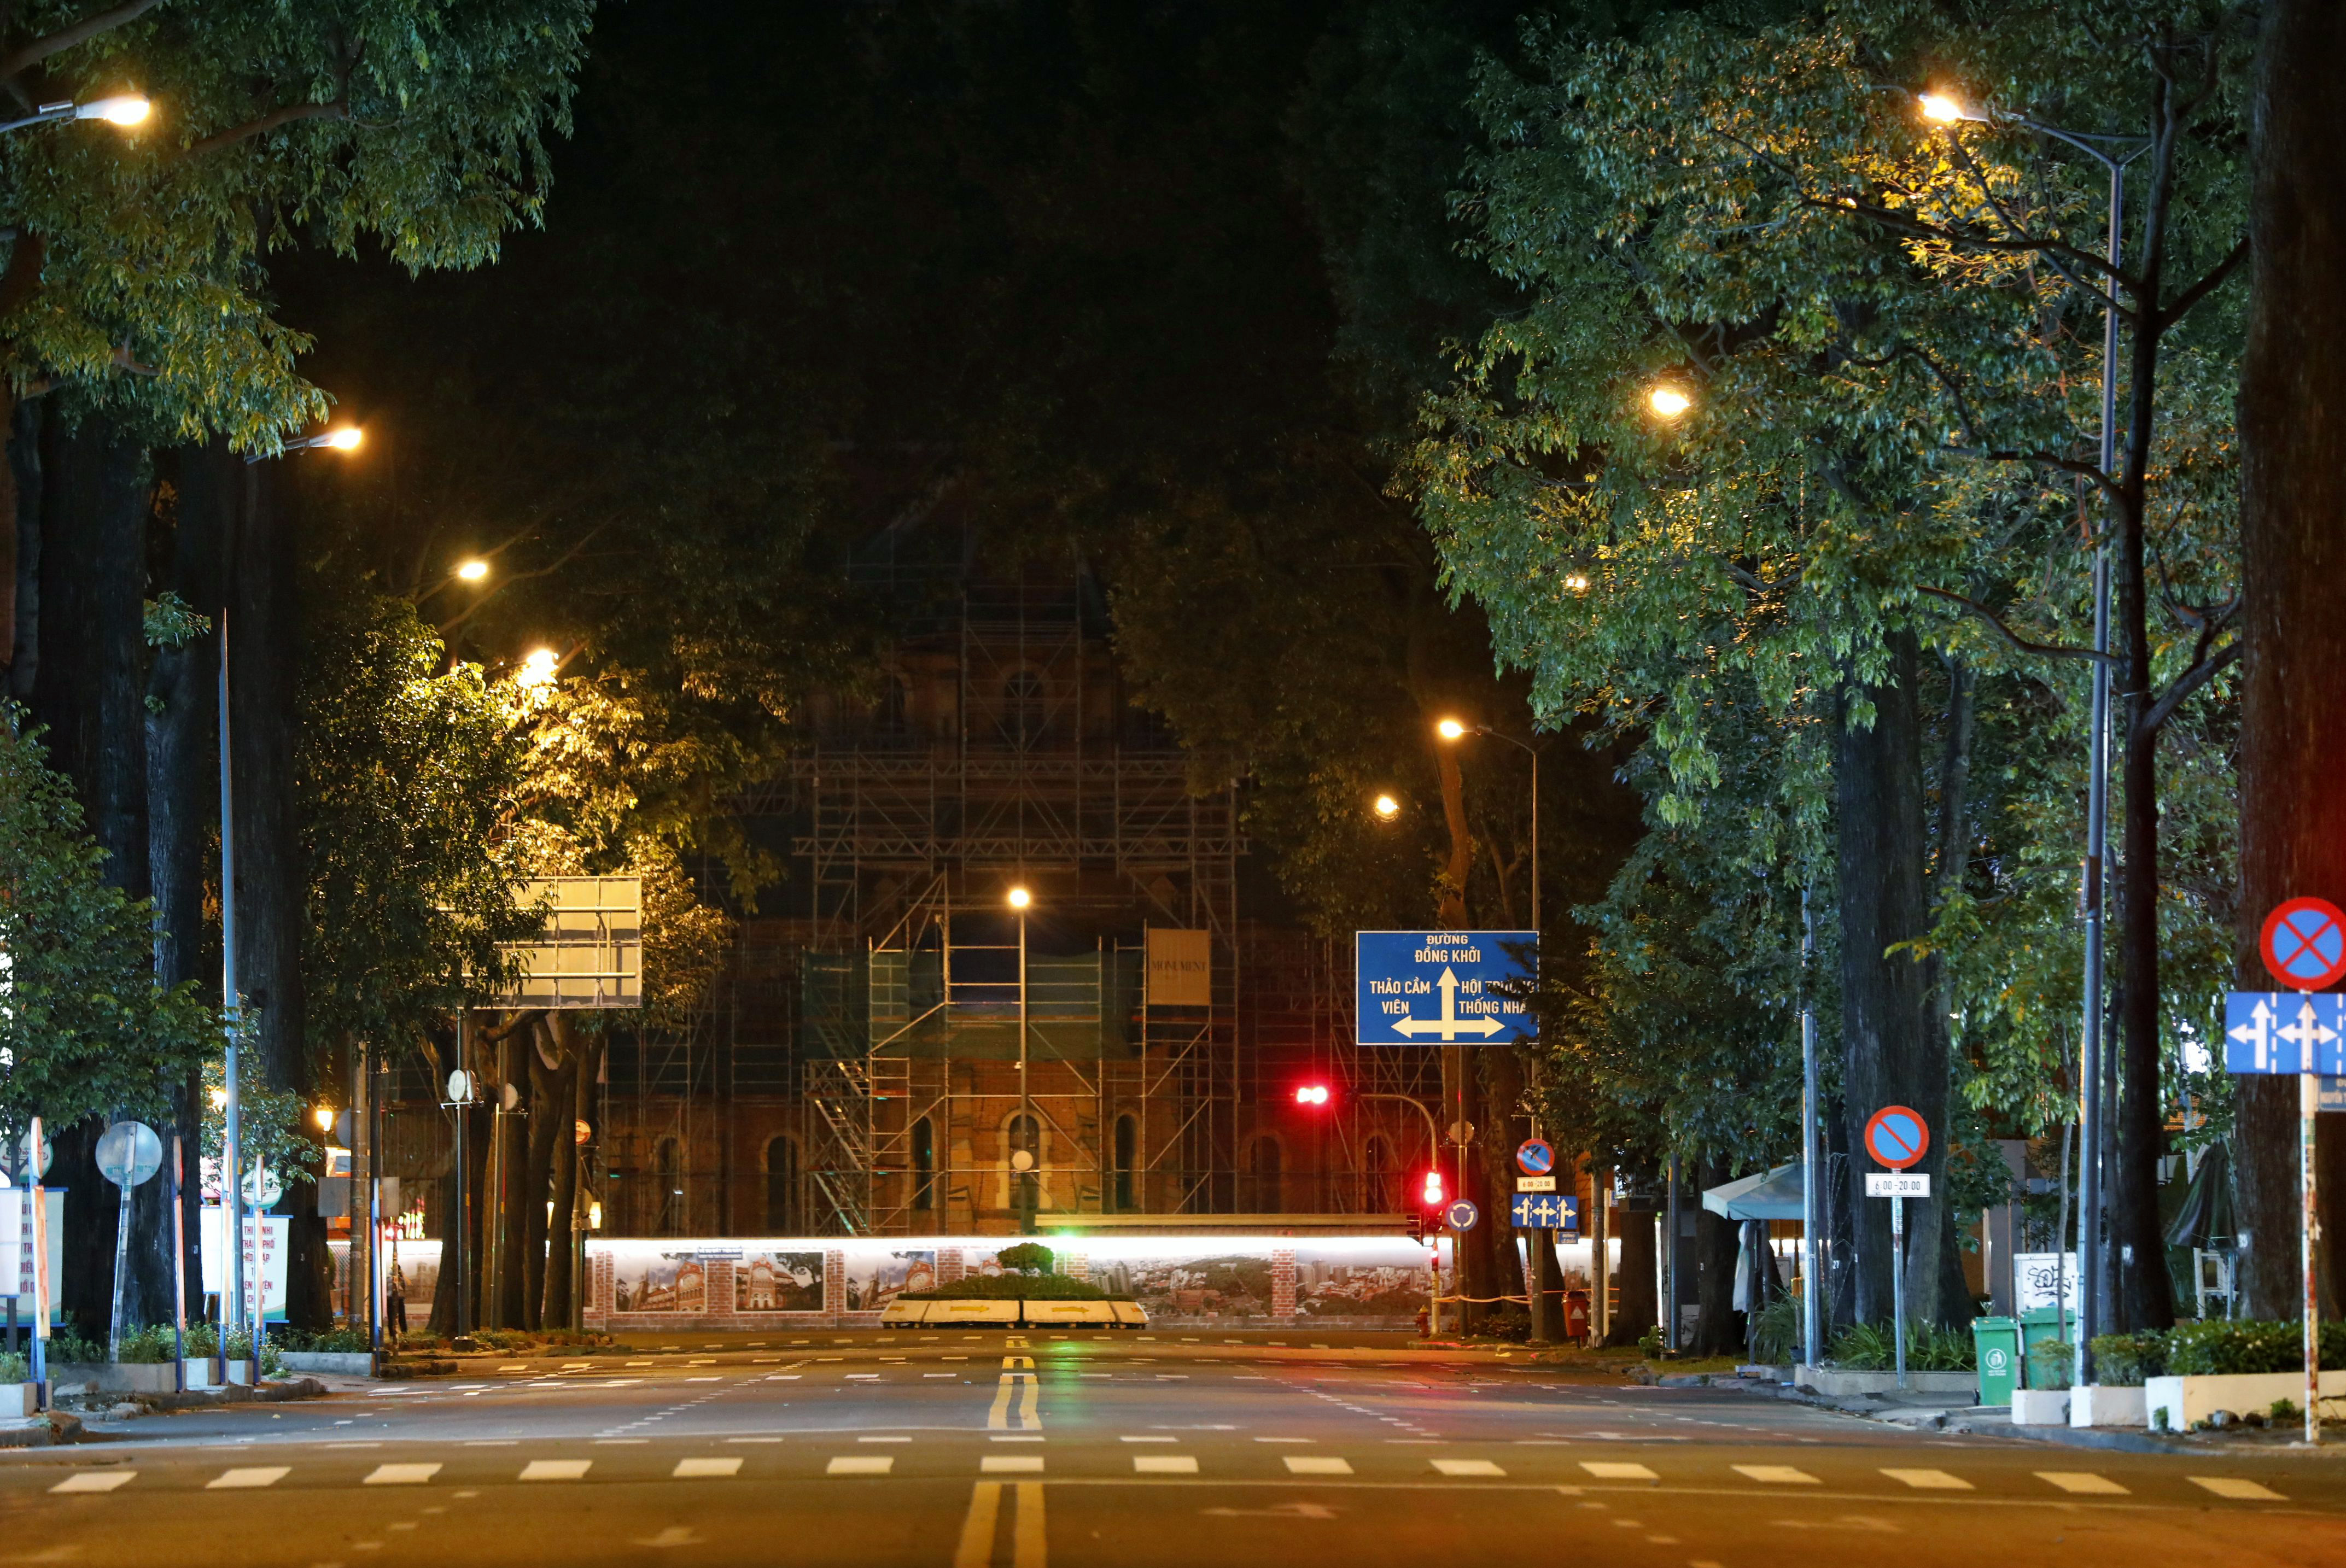 Đường phố TP.HCM đêm đầu tiên: Hãy cùng tìm hiểu về những cảm nhận đầu tiên của những người trải nghiệm Sài Gòn vào ban đêm. Dù là tòa nhà cao tầng hay những con phố nhỏ bé đầy sắc màu ánh đèn, Sài Gòn vẫn là một điểm đến hấp dẫn vào ban đêm.